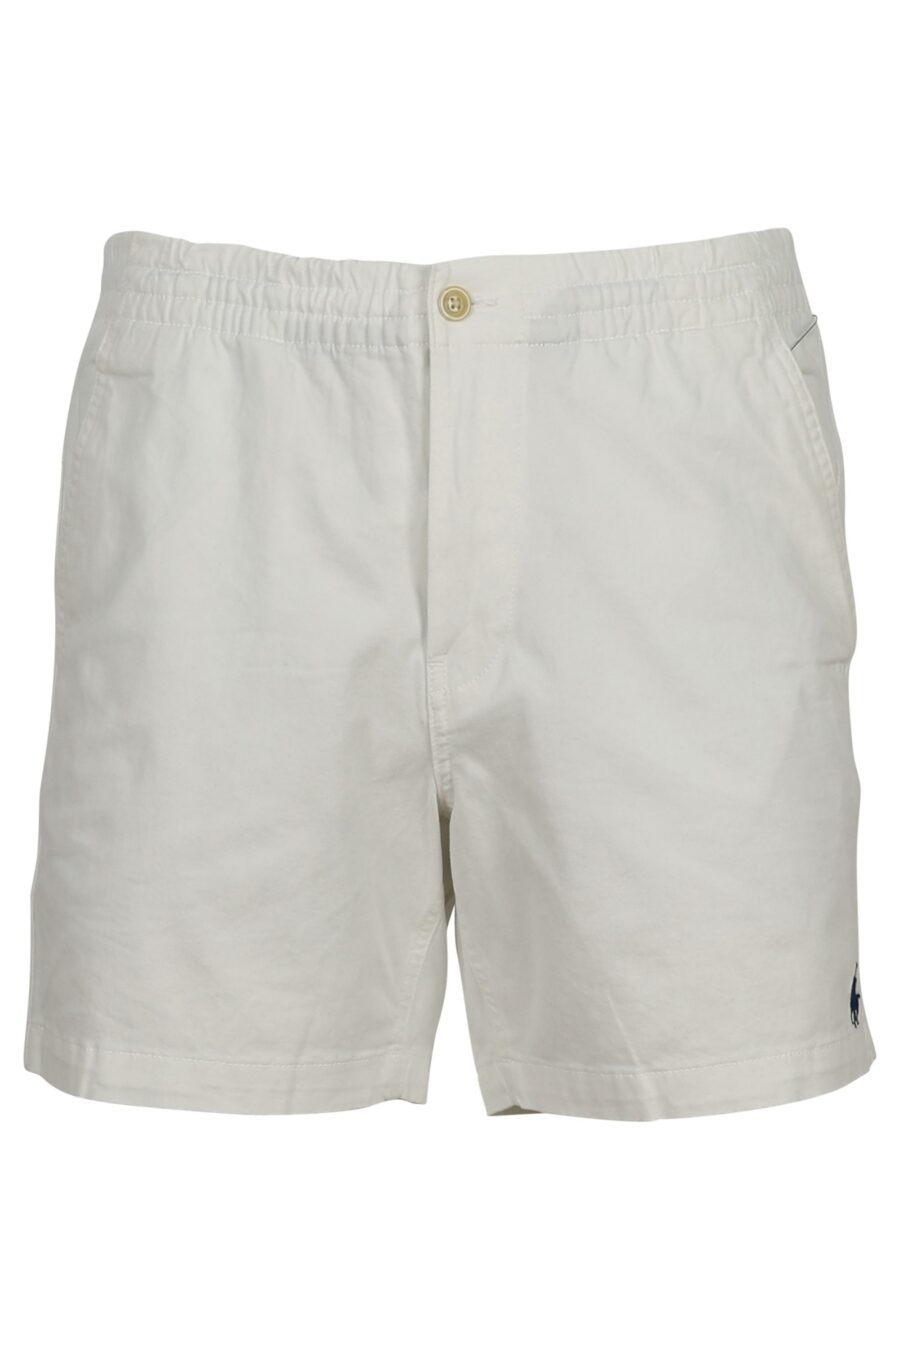 Pantalón blanco corto con minilogo "polo" - 3614712774080